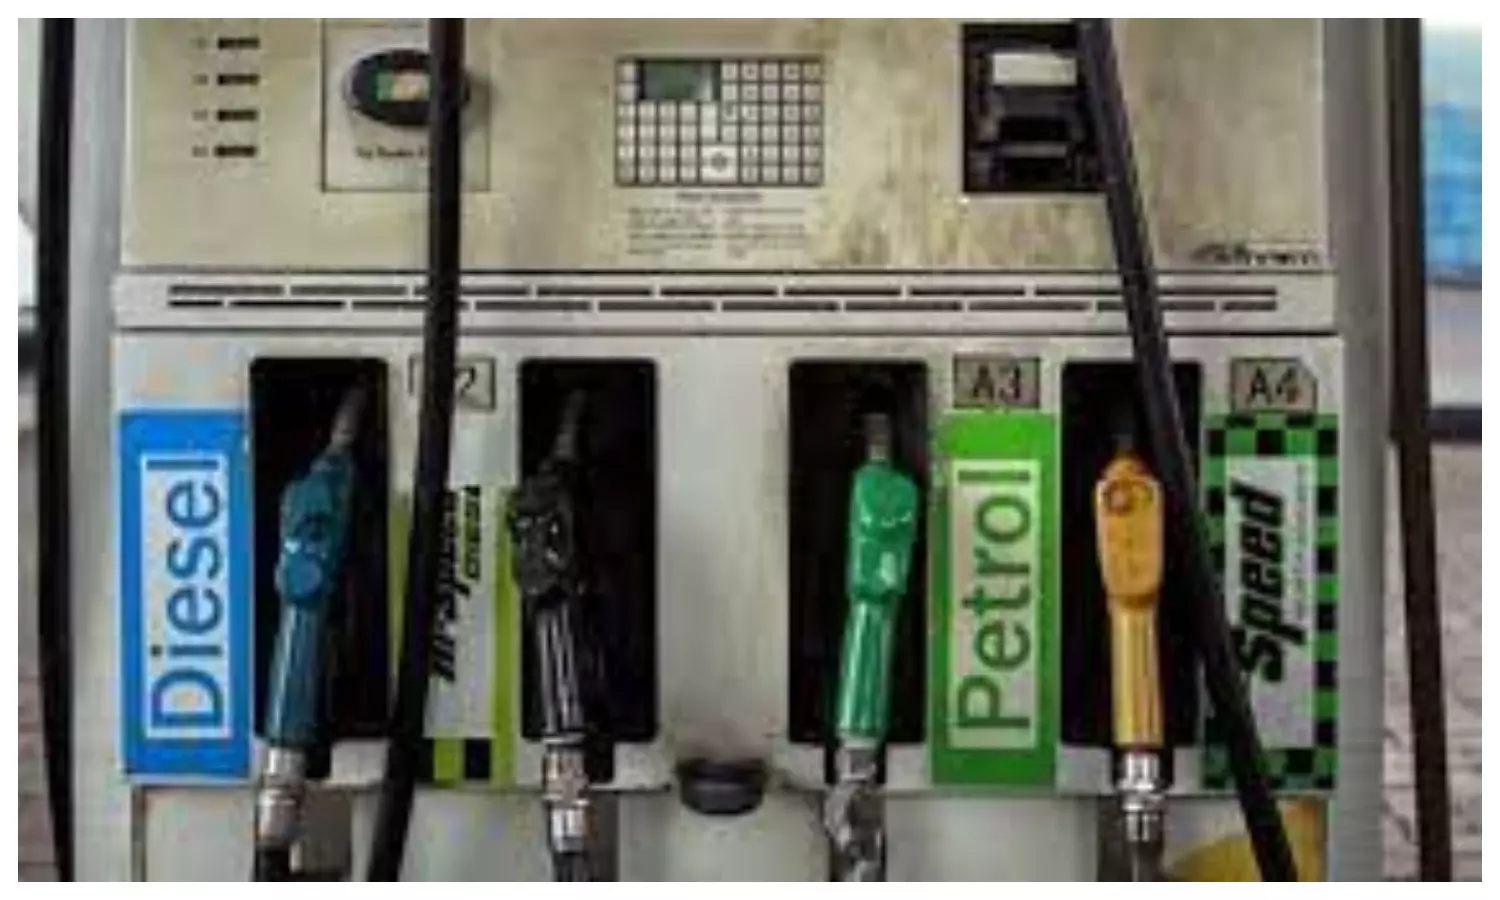 Petrol Diesel Price Today: यूपी में बदले पेट्रोल डीजल के दाम, खरीदने से पहले फटाफट चेक कर लें रेट